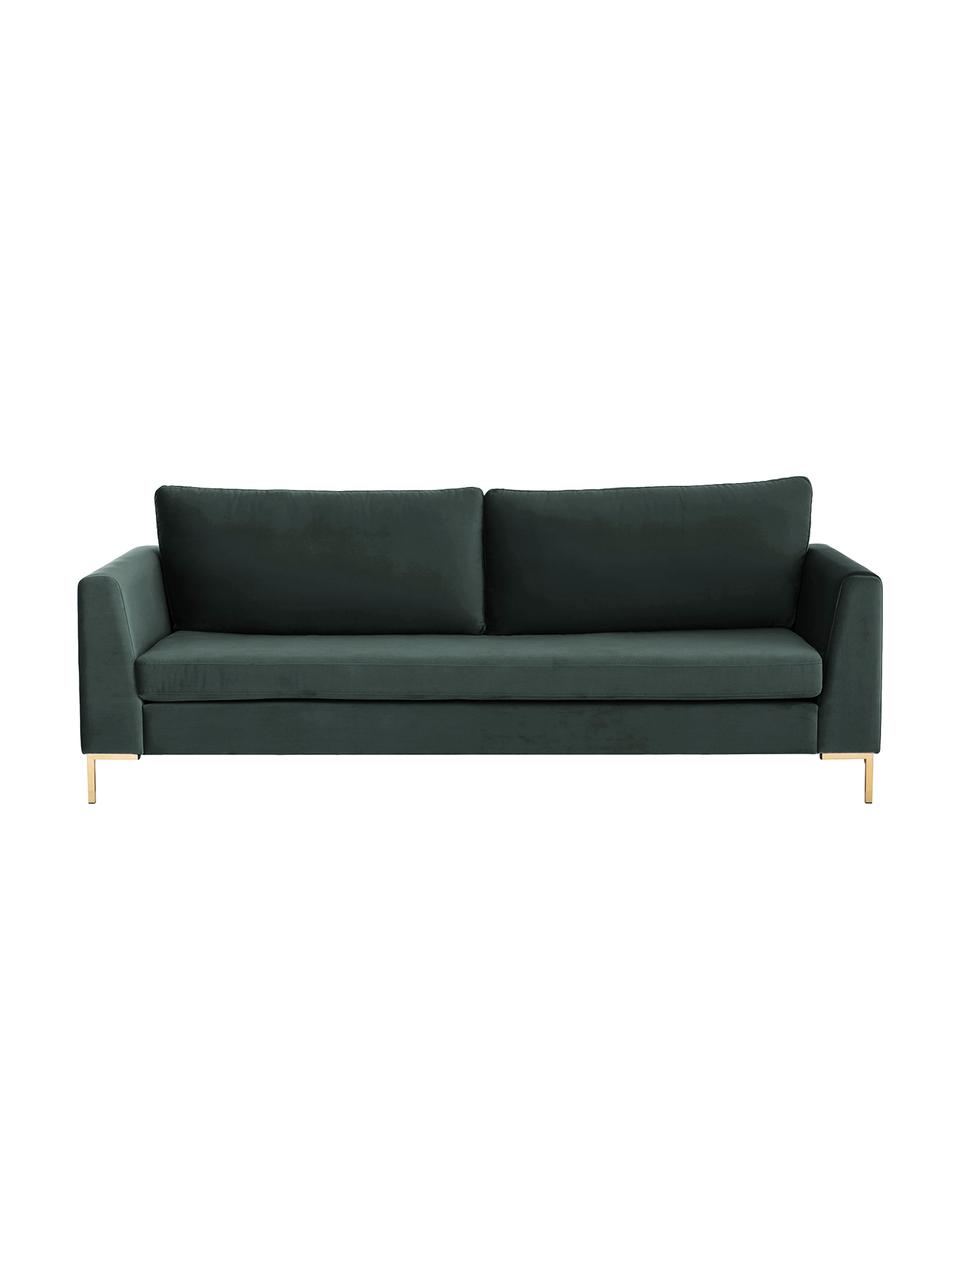 Sofa z aksamitu z metalowymi nogami Luna (3-osobowa), Tapicerka: aksamit (poliester) Dzięk, Nogi: metal galwanizowany, Ciemnozielony aksamit, S 230 x G 95 cm